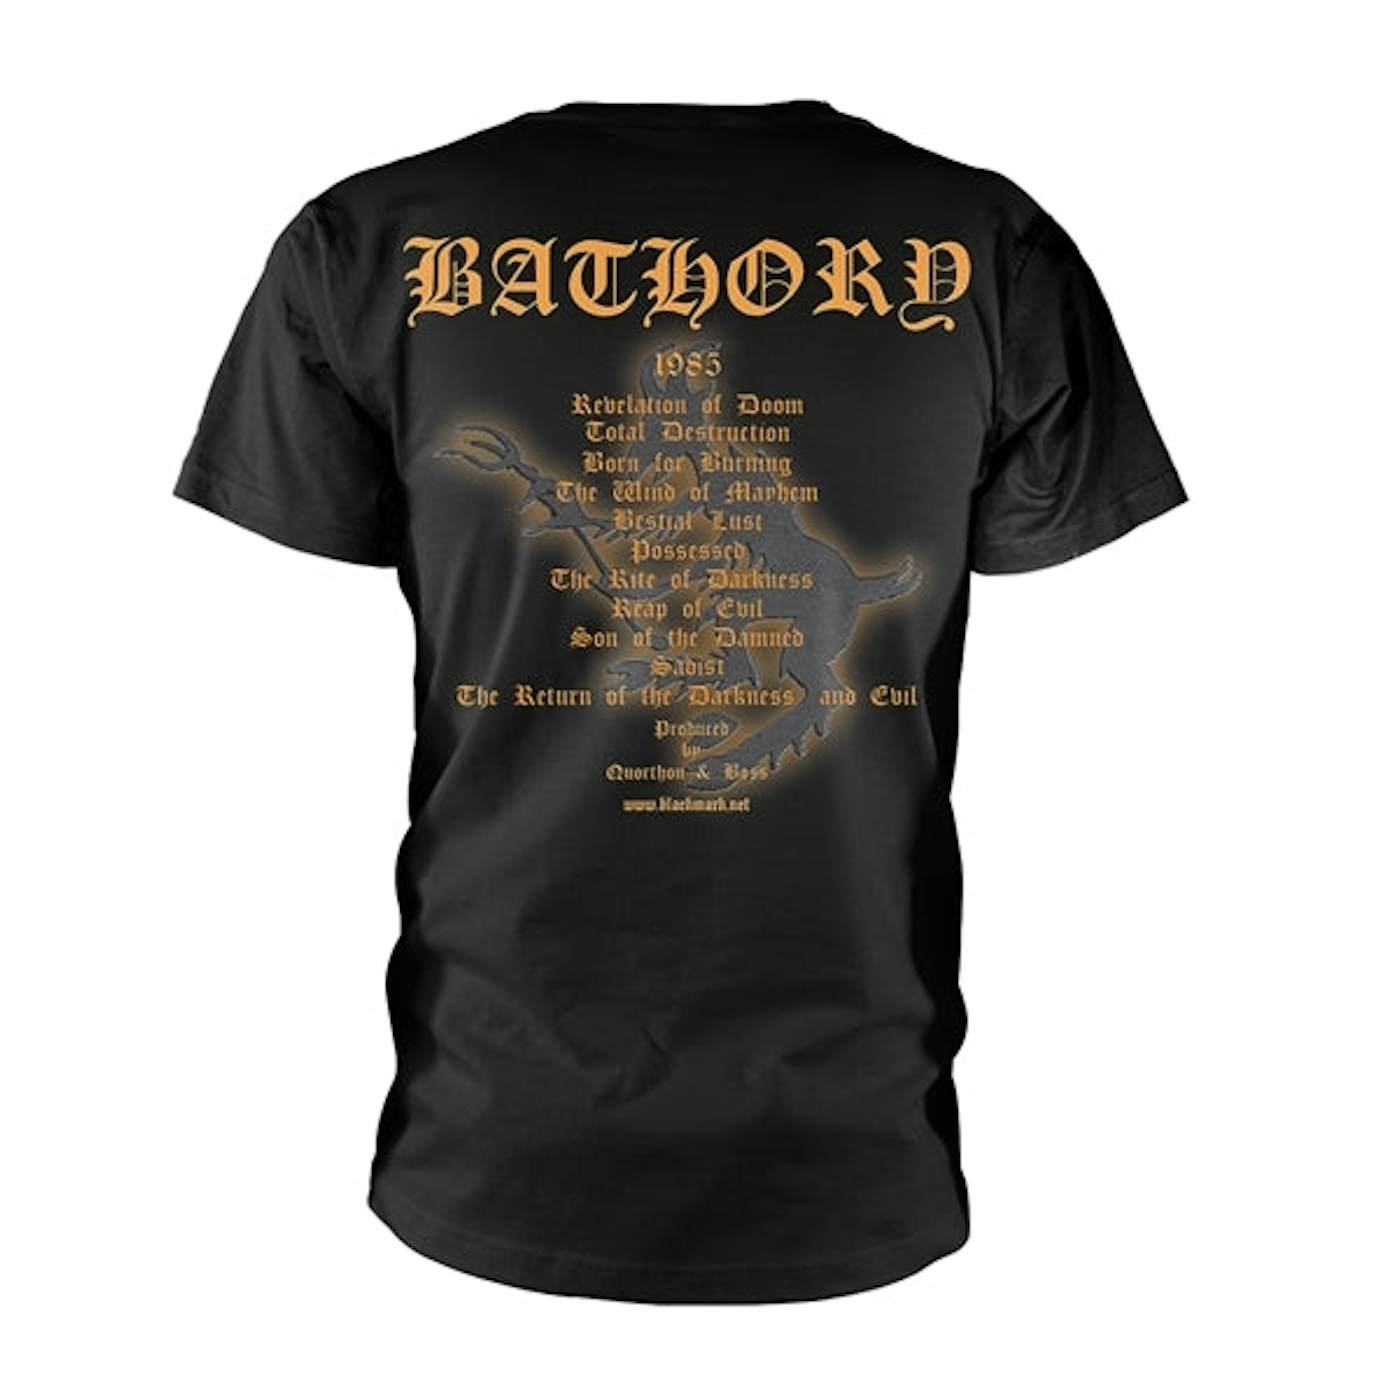 Bathory T-Shirt - The Return... 2017